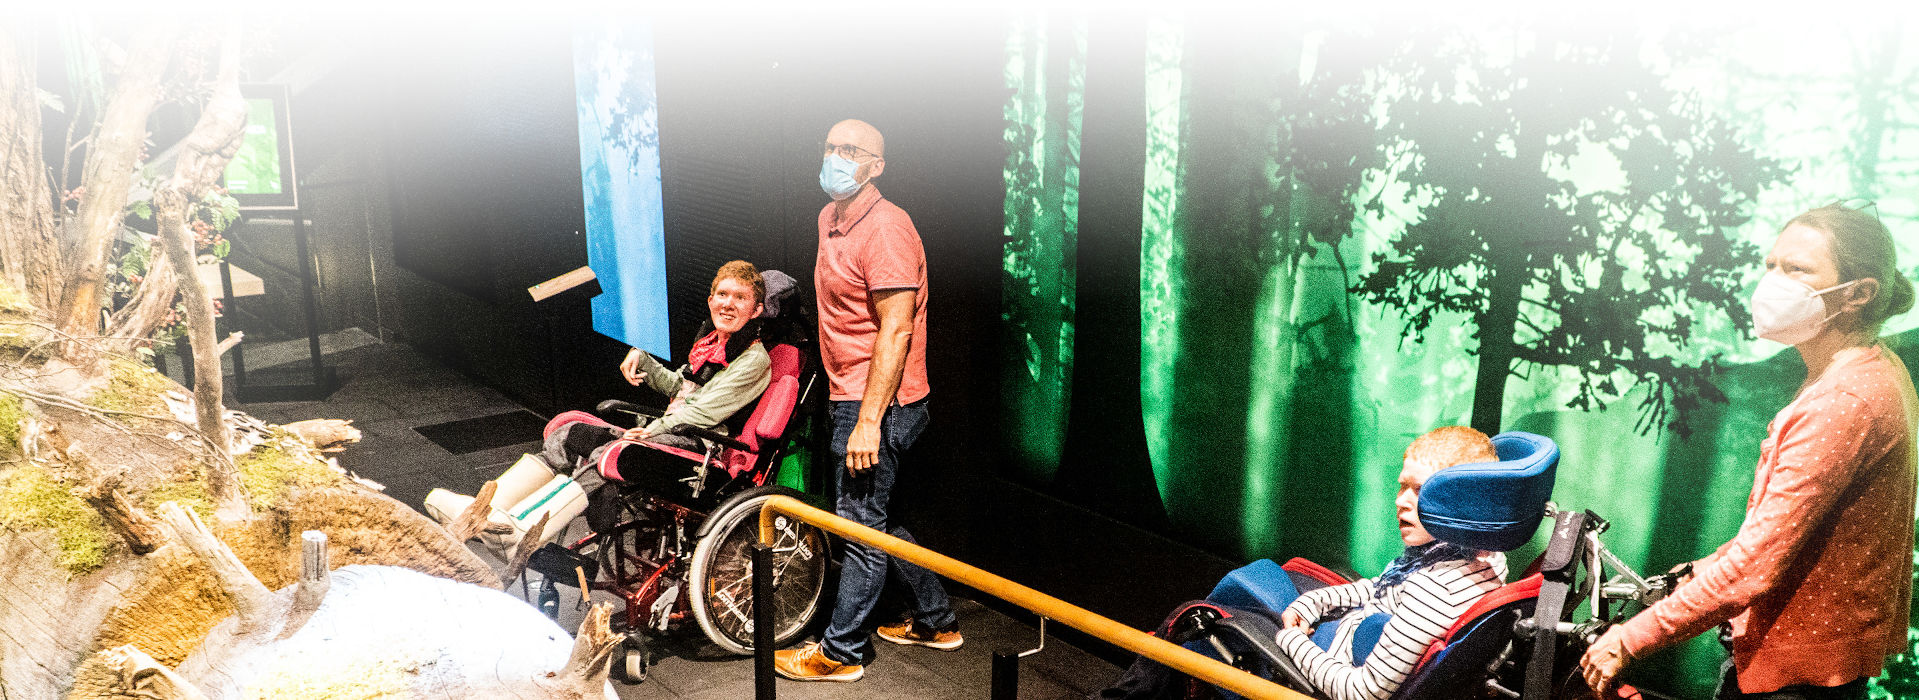 In einem abgedunkelten Raum sind vier Personen: Ein Mann und eine Frau begleiten jeweils einen Rollstuhlfahrer. Alle schauen auf einen links im Bild angeschnitten gezeigten liegenden Baumstamm. Hinter den Personen ist eine leuchtende Bildwand mit einem Foto eines nächtlichen, grün hinterleucheteten Waldes.